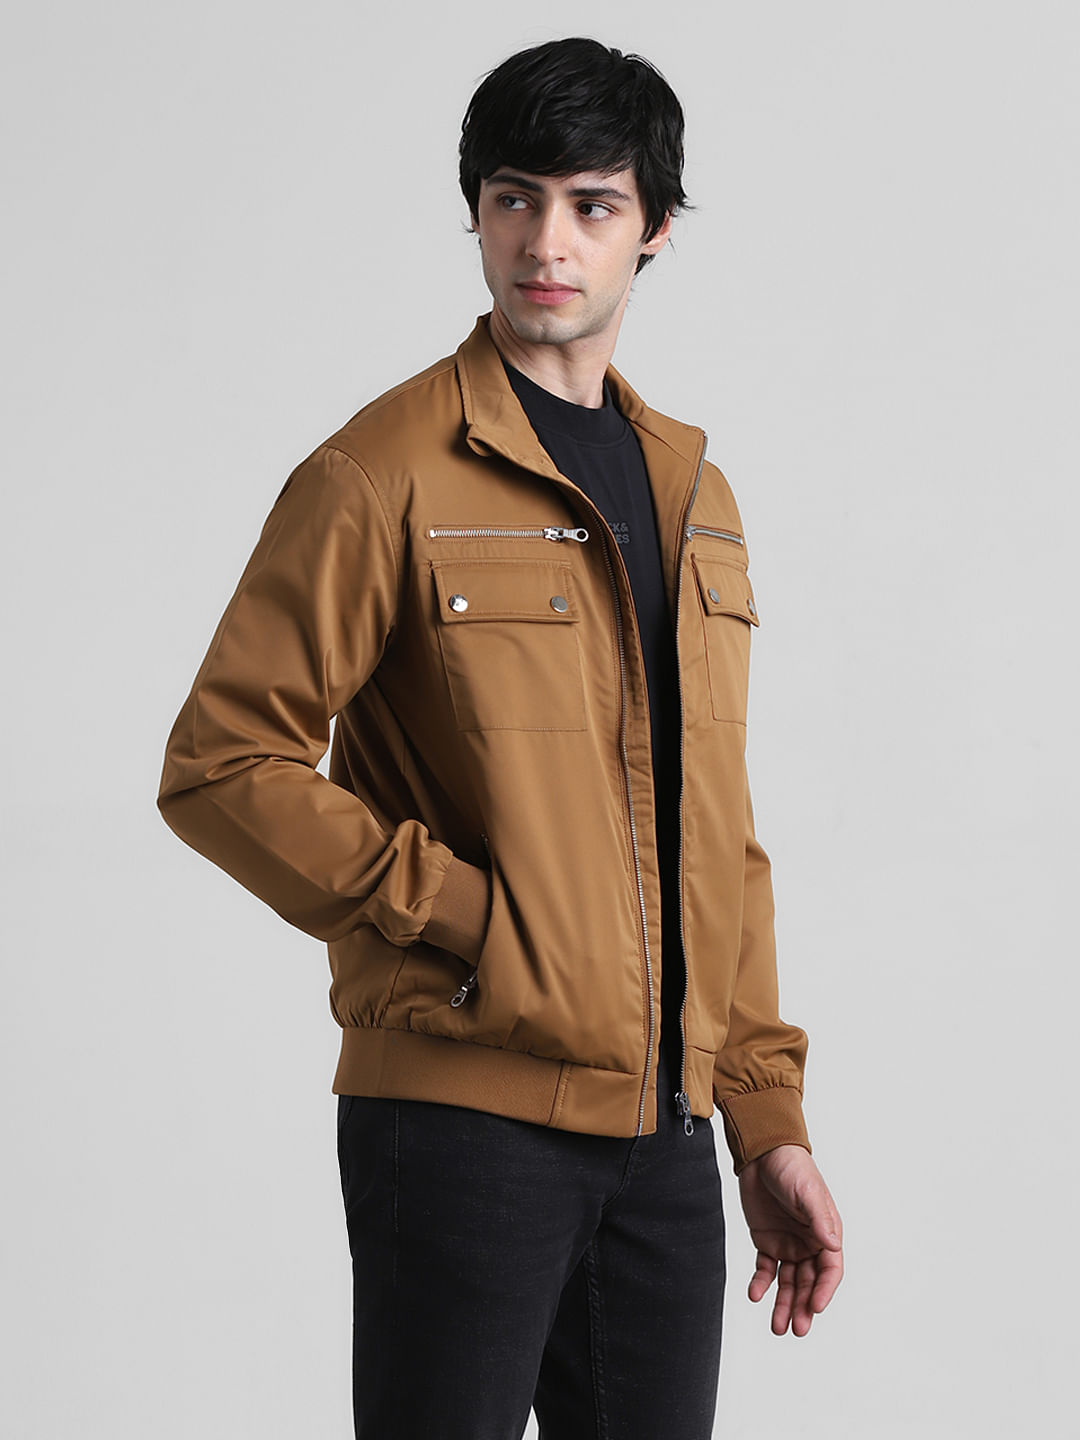 Buy Celio Solid Brown Long Sleeves Denim Jacket at Amazon.in